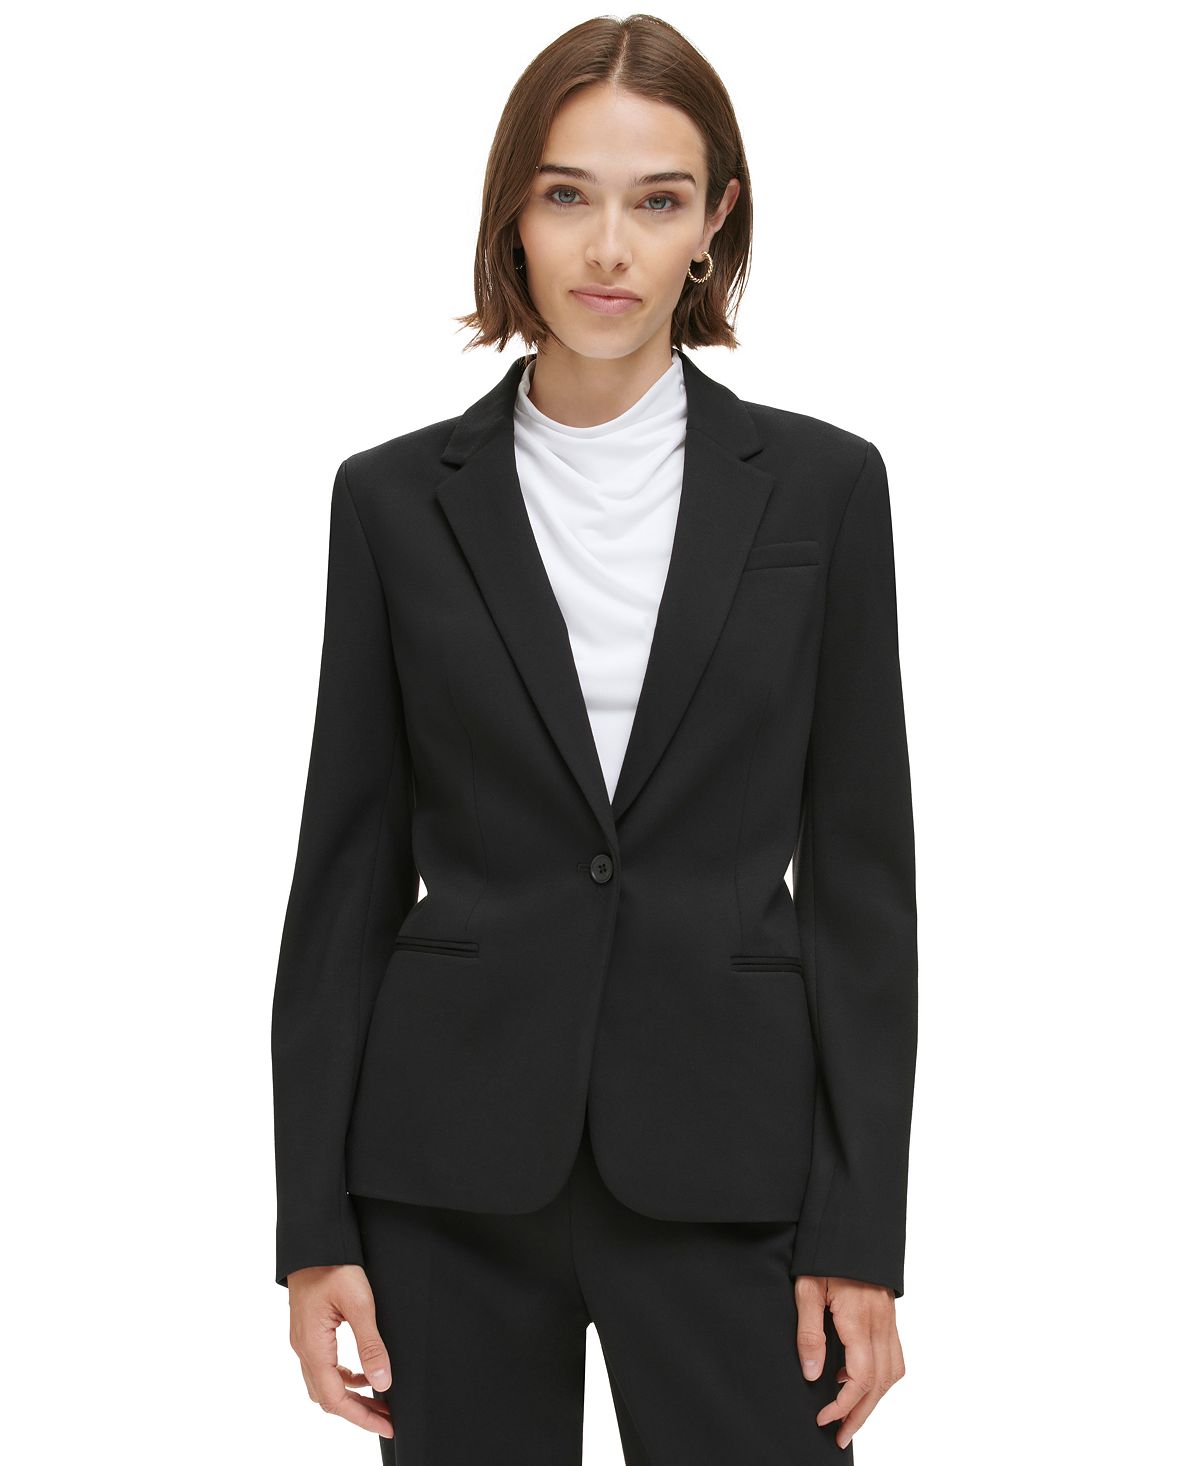 Женский пиджак на одной пуговице Calvin Klein, черный женский пиджак lux на одной пуговице calvin klein цвет charcoal